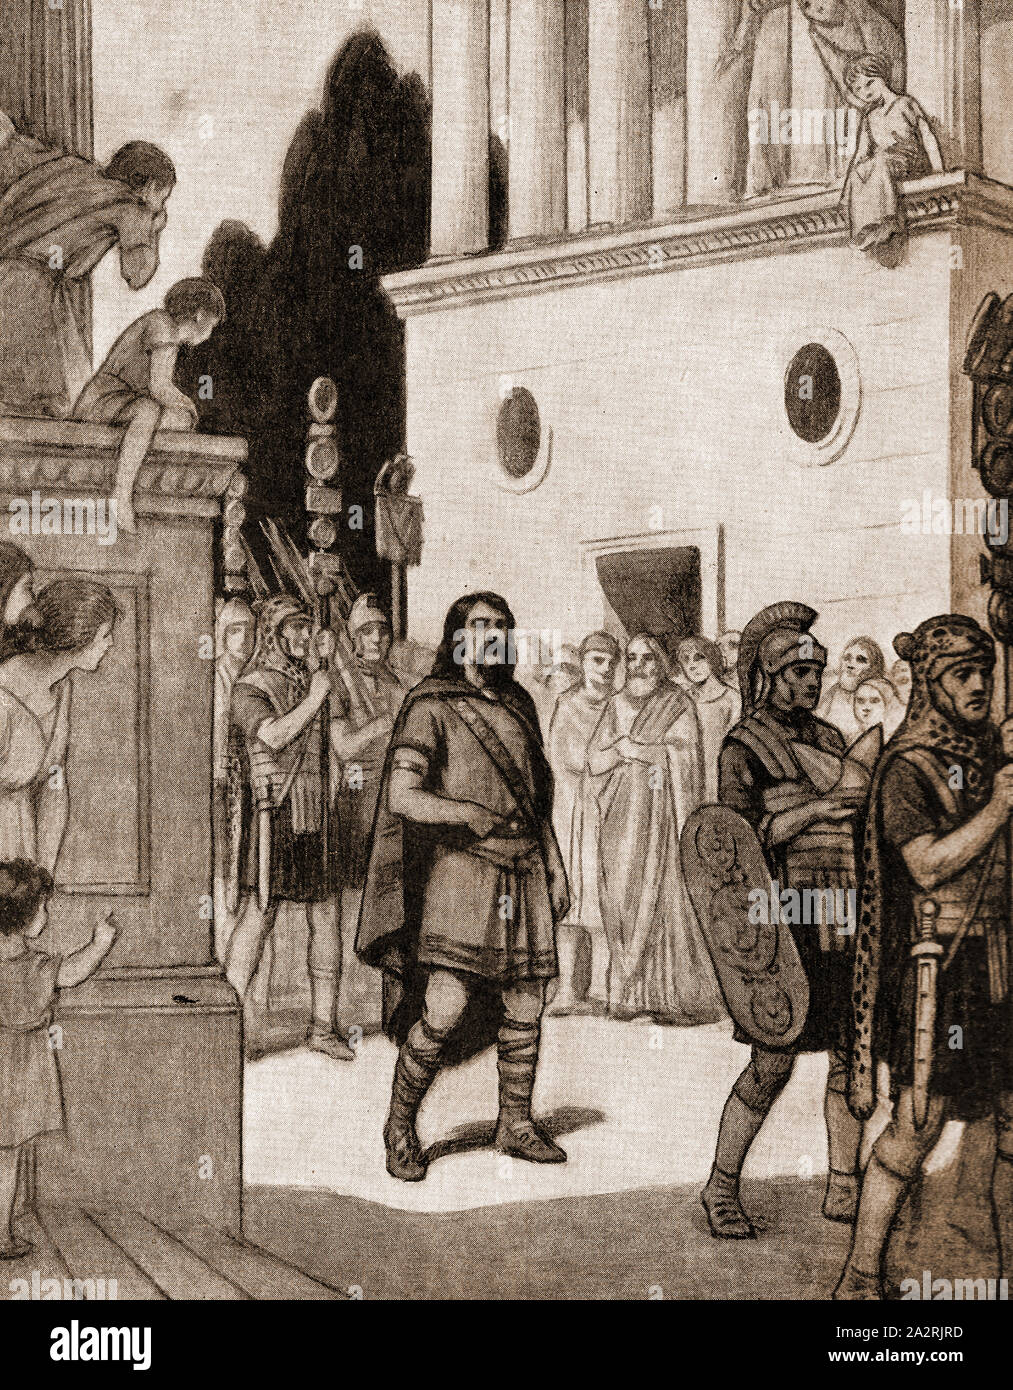 Illustration de 1930 . Le chef guerrier britannique Caratacus des Catuvellauni tribe (1er siècle Bretagne) après avoir été capturés par les Romains Banque D'Images